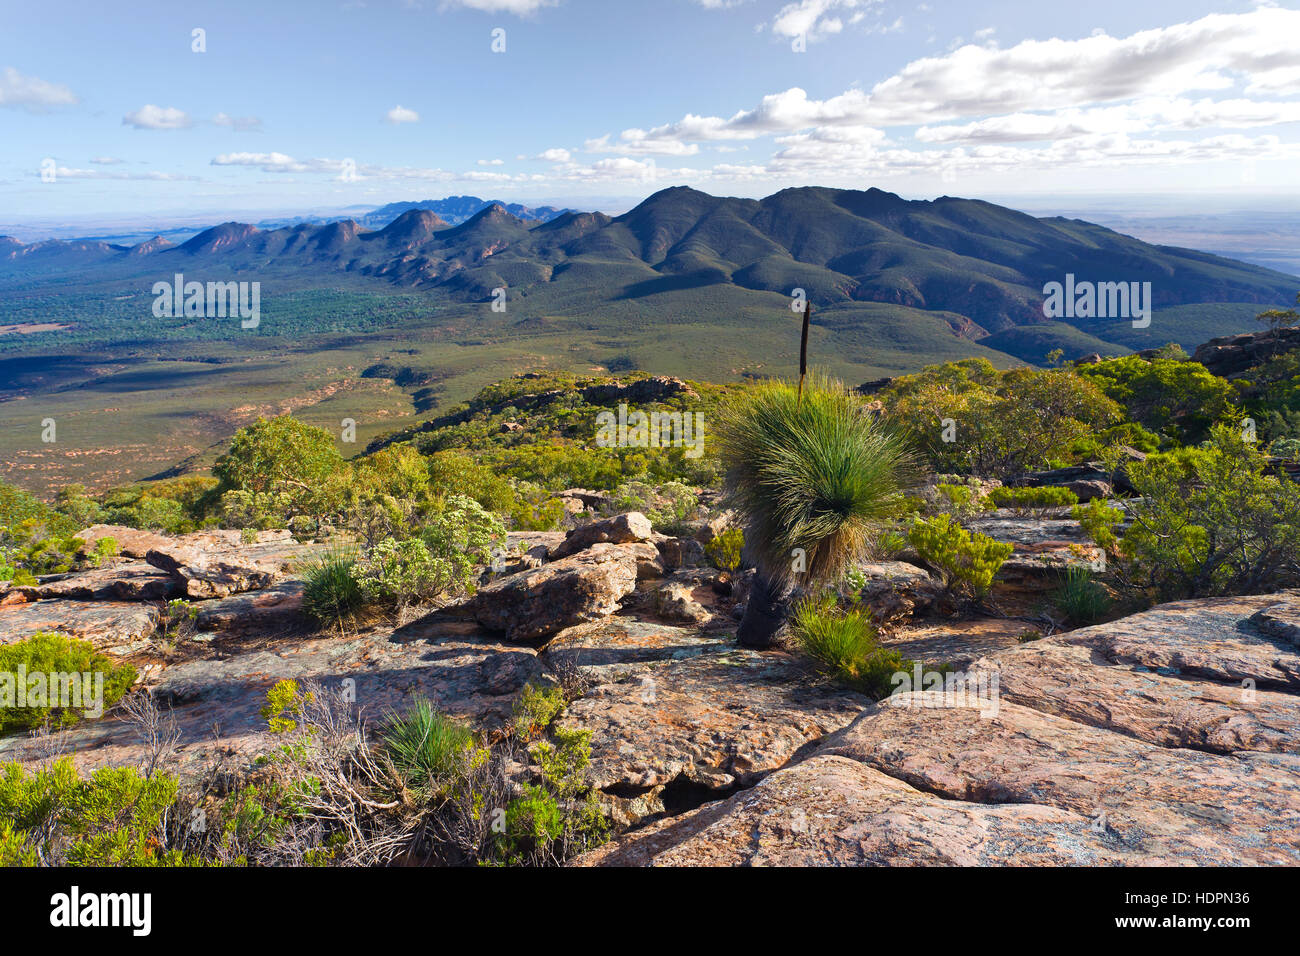 Landschaftsbild Outback Panorama Flinders reicht South Australia australischen Landschaften die Ansicht des Wilpena Pound aus St Mary Peak Stockfoto